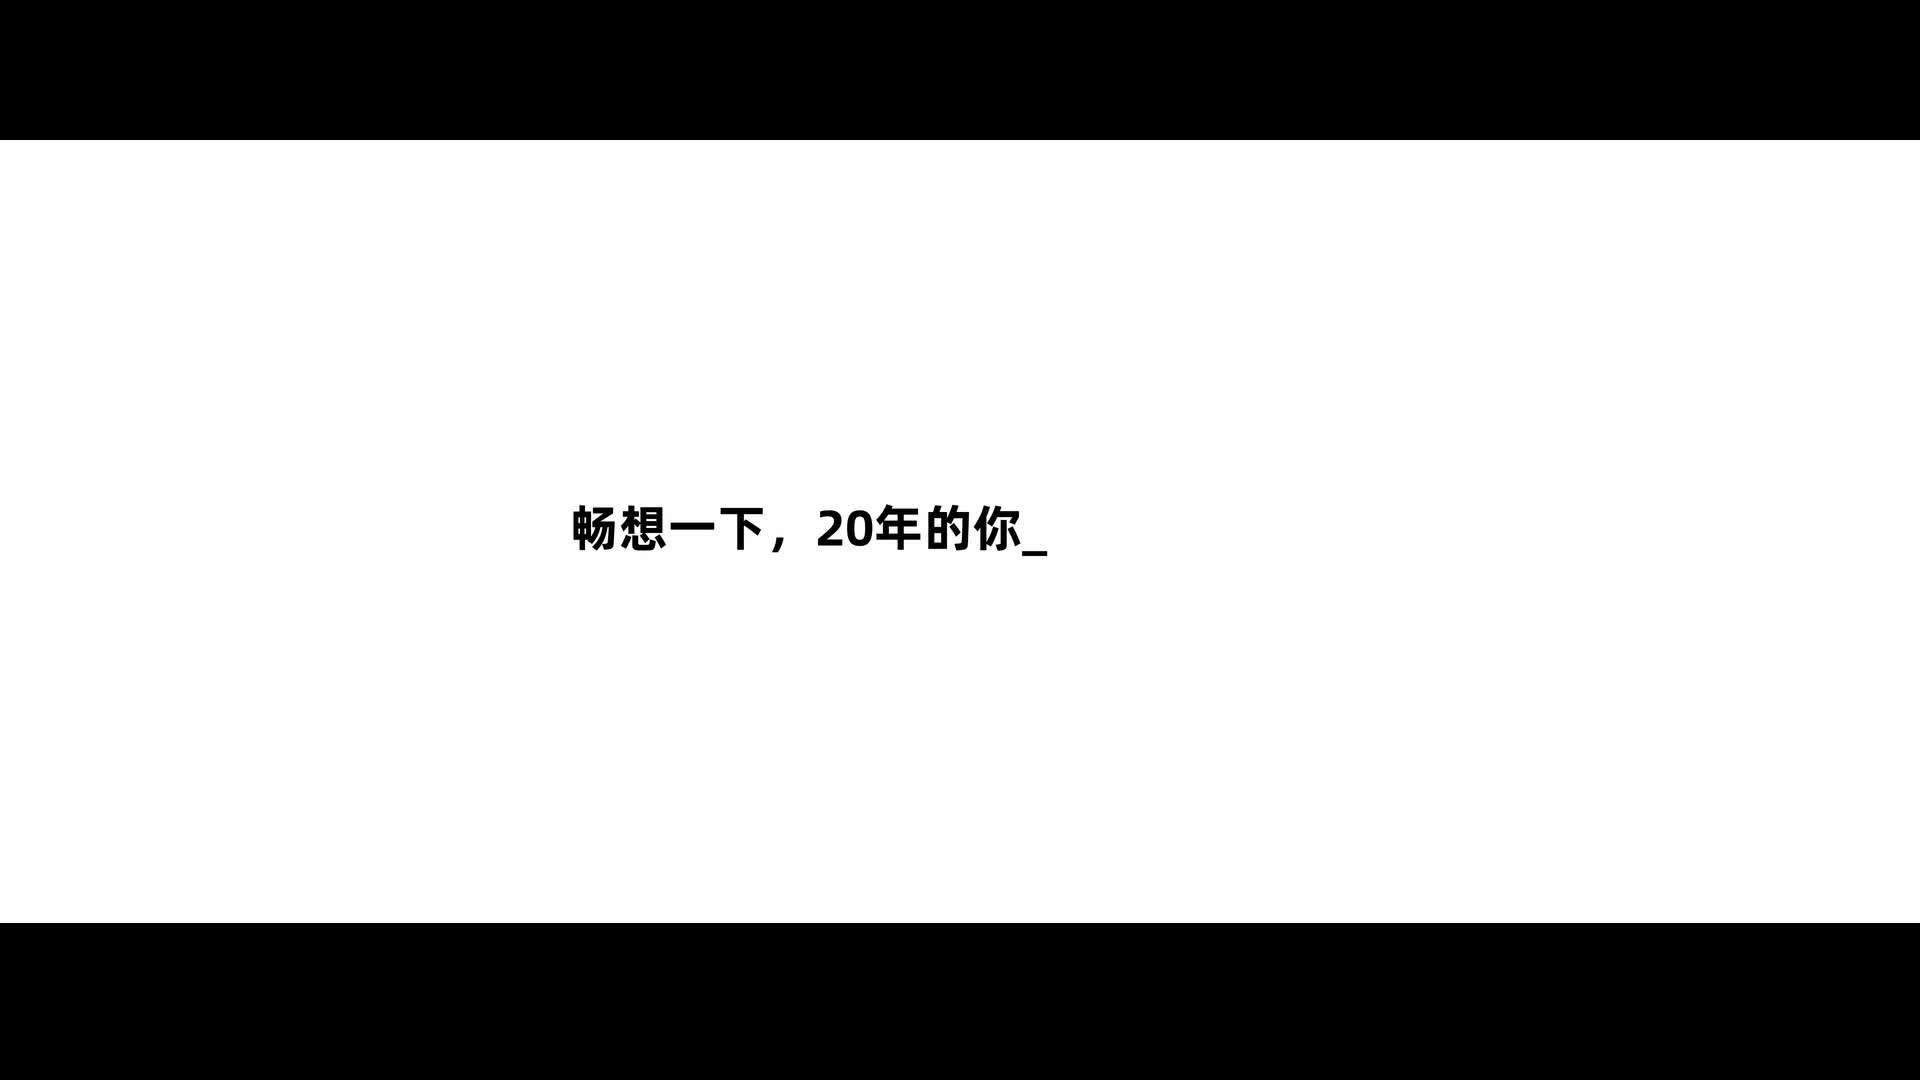 德华永胜20周年庆典片